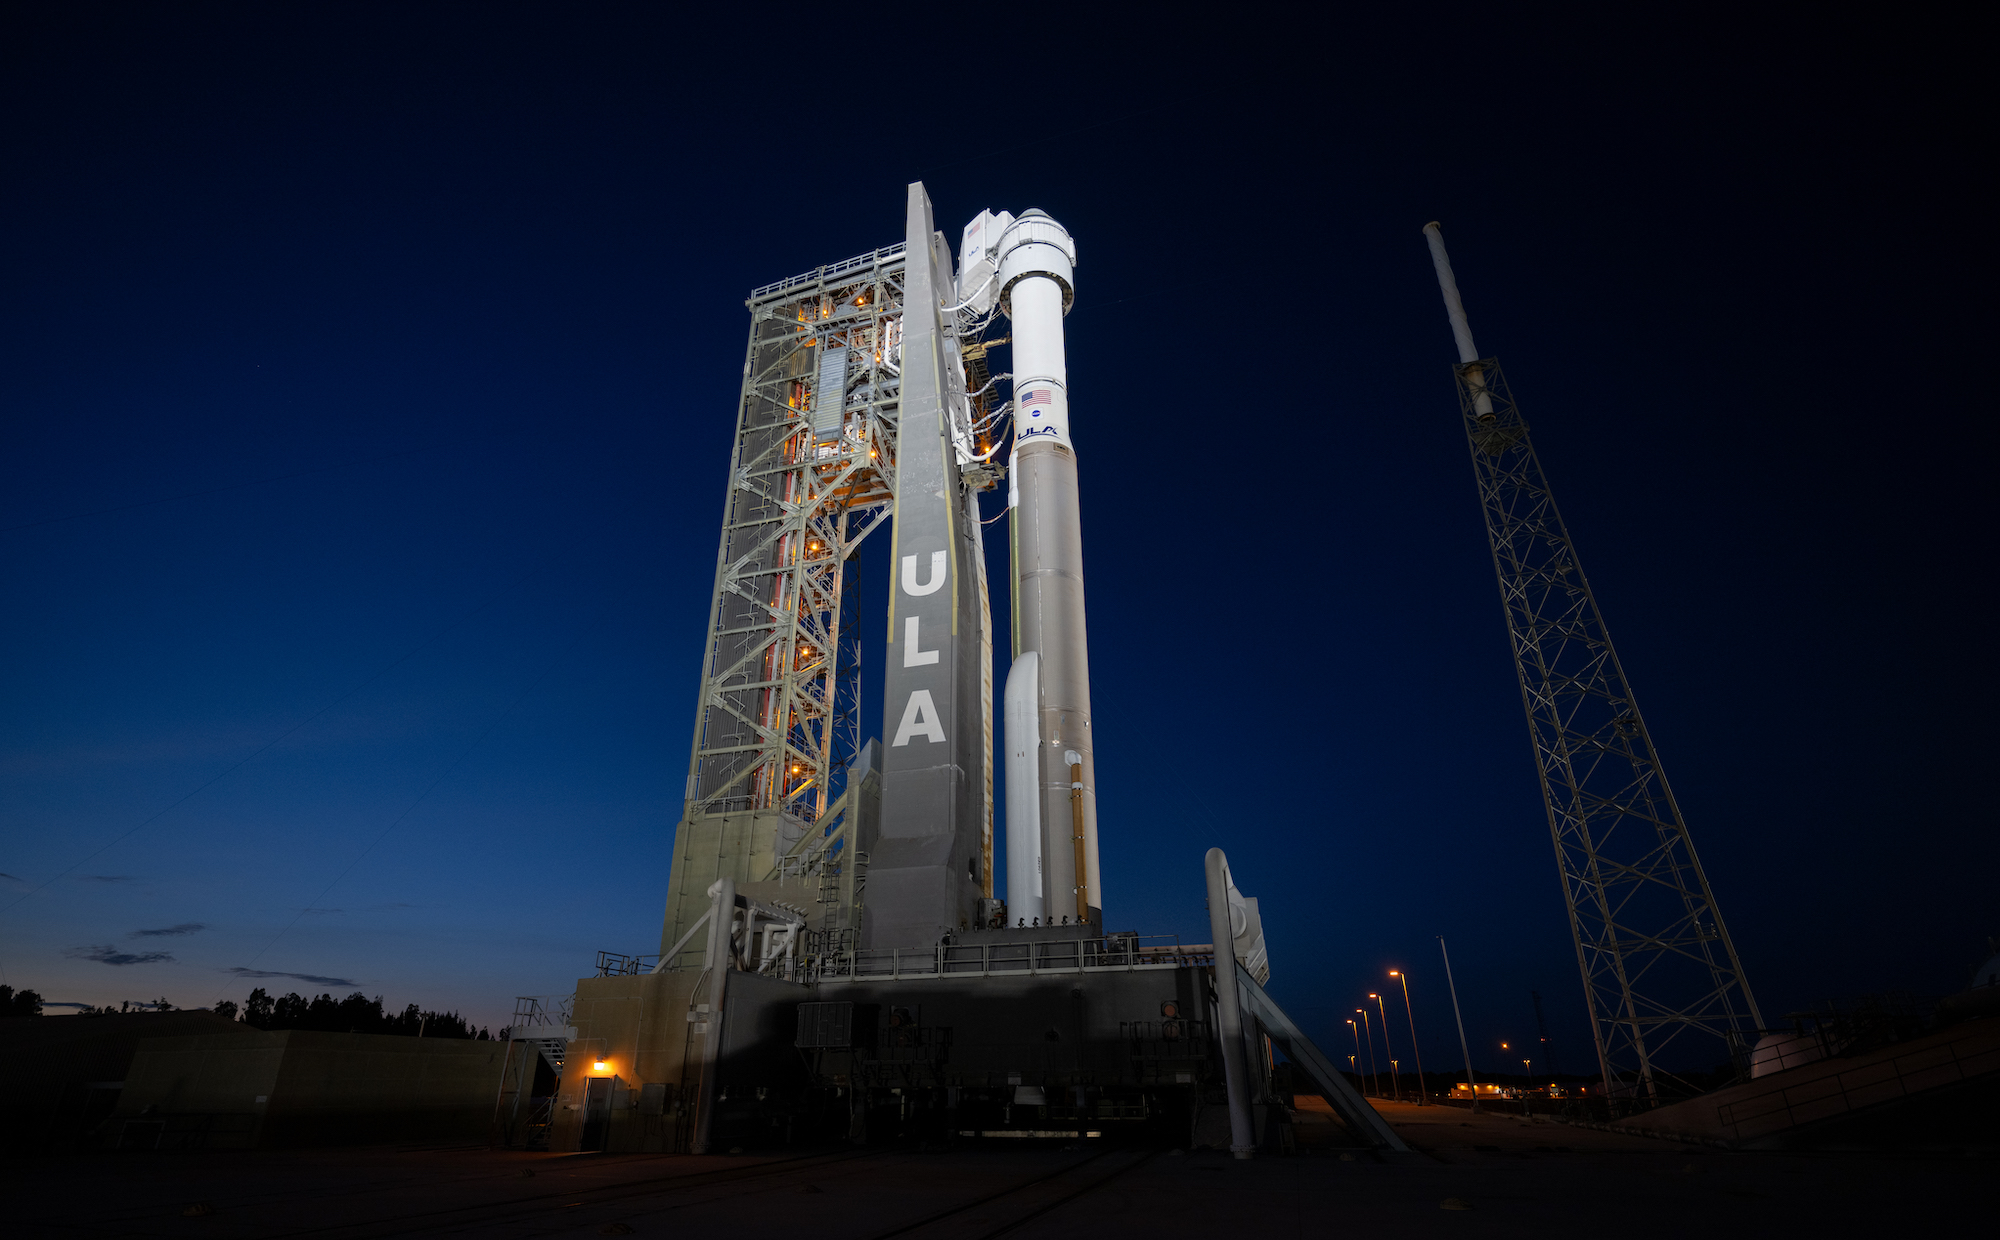 यूएलए का एटलस वी रॉकेट और बोइंग स्पेस का स्टारलाइनर अंतरिक्ष यान फ्लोरिडा के कैनेडी स्पेस सेंटर के लॉन्चपैड पर।